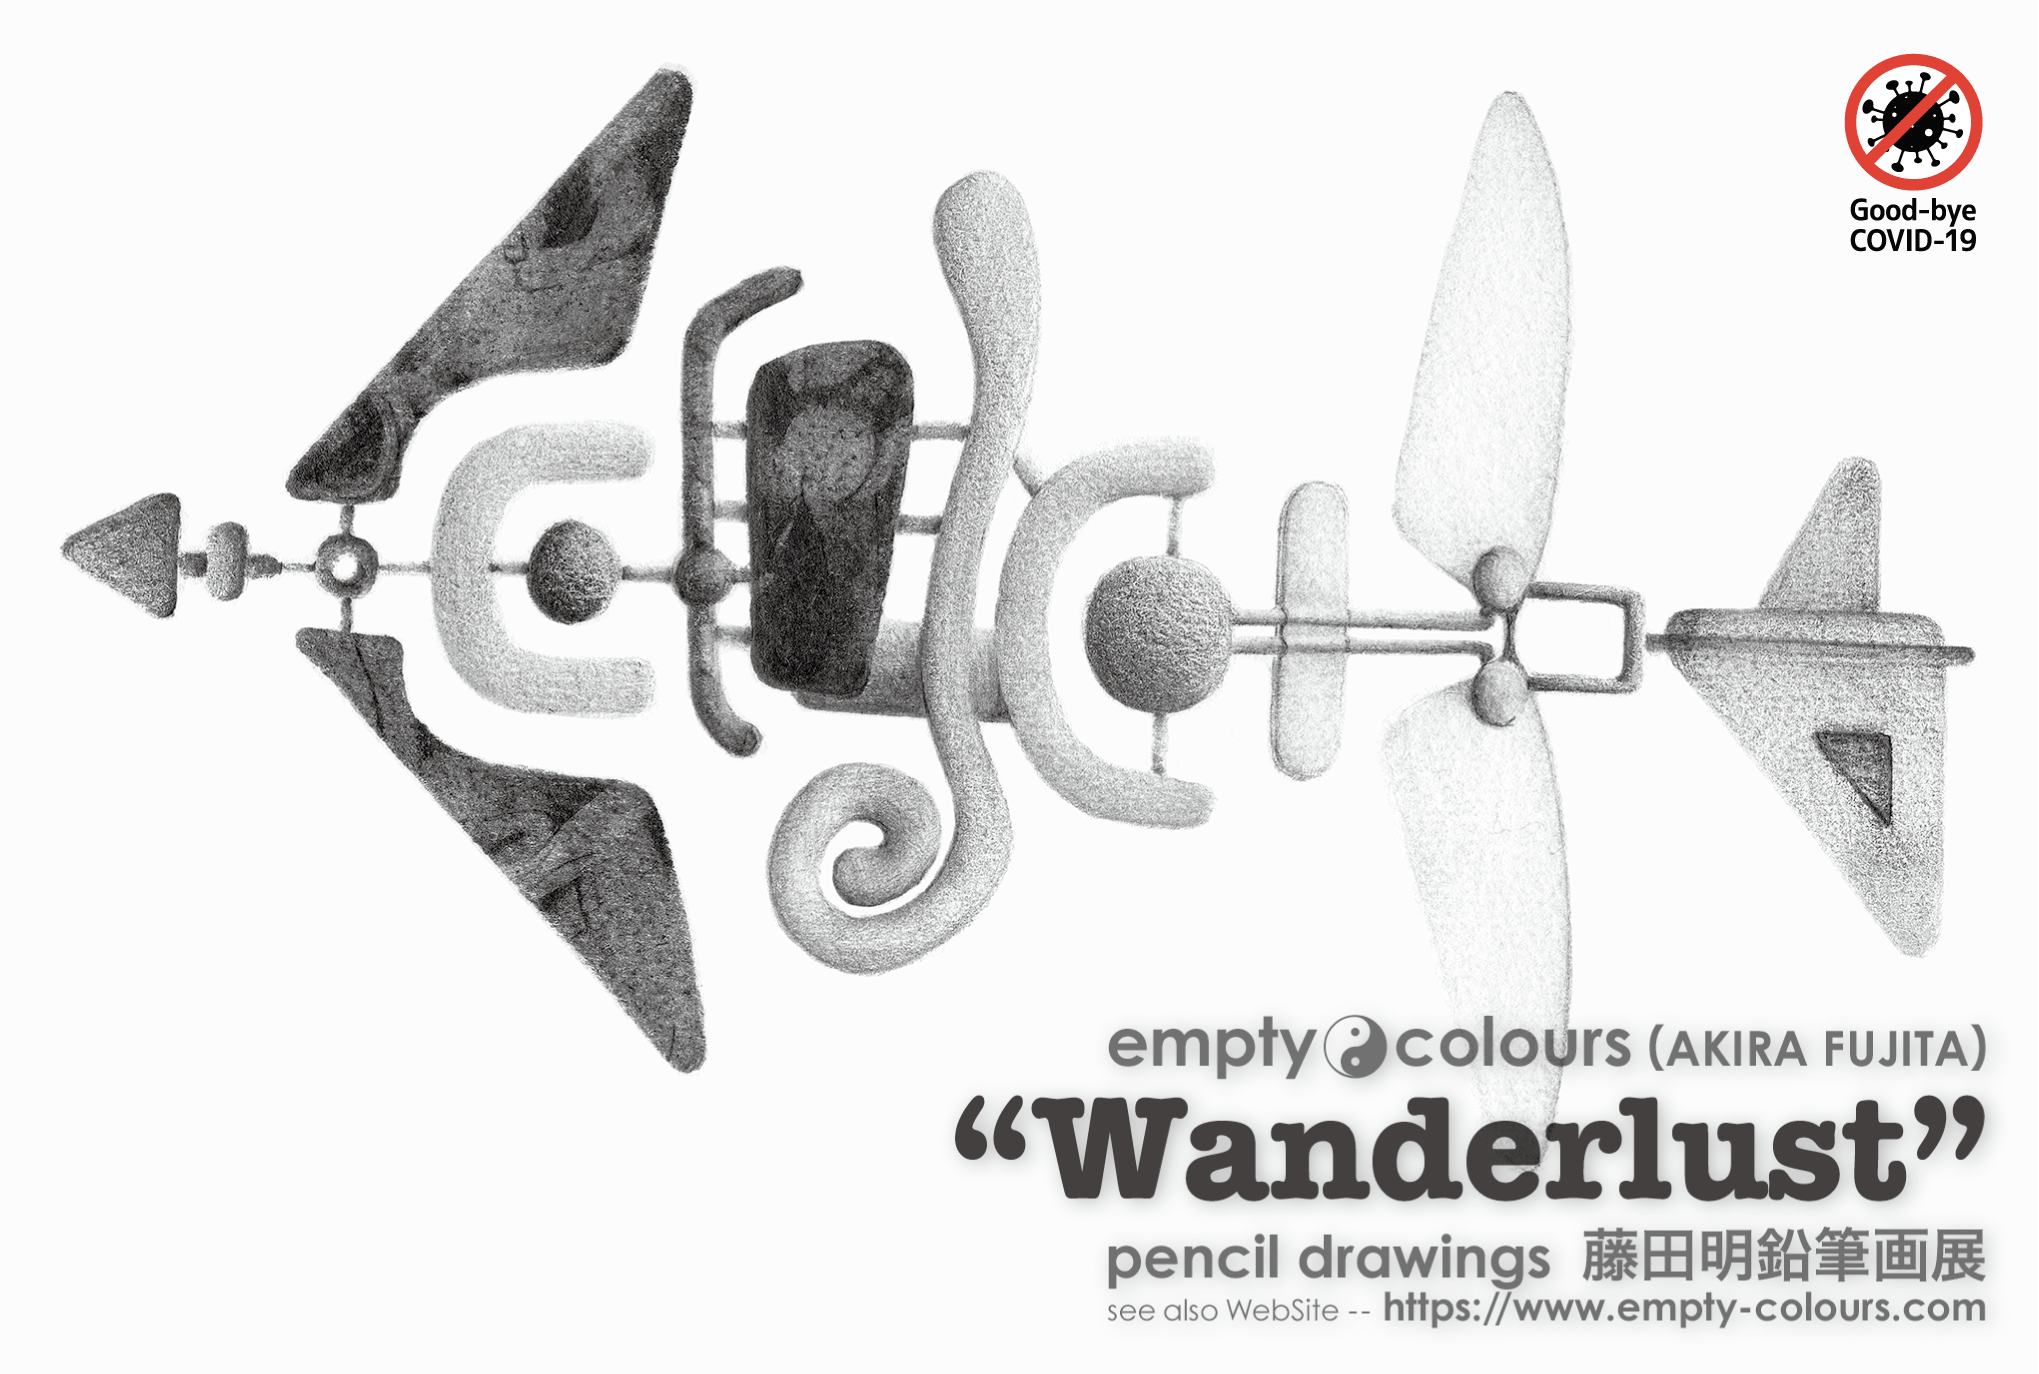 藤田明 鉛筆画個展 "Wanderlust"